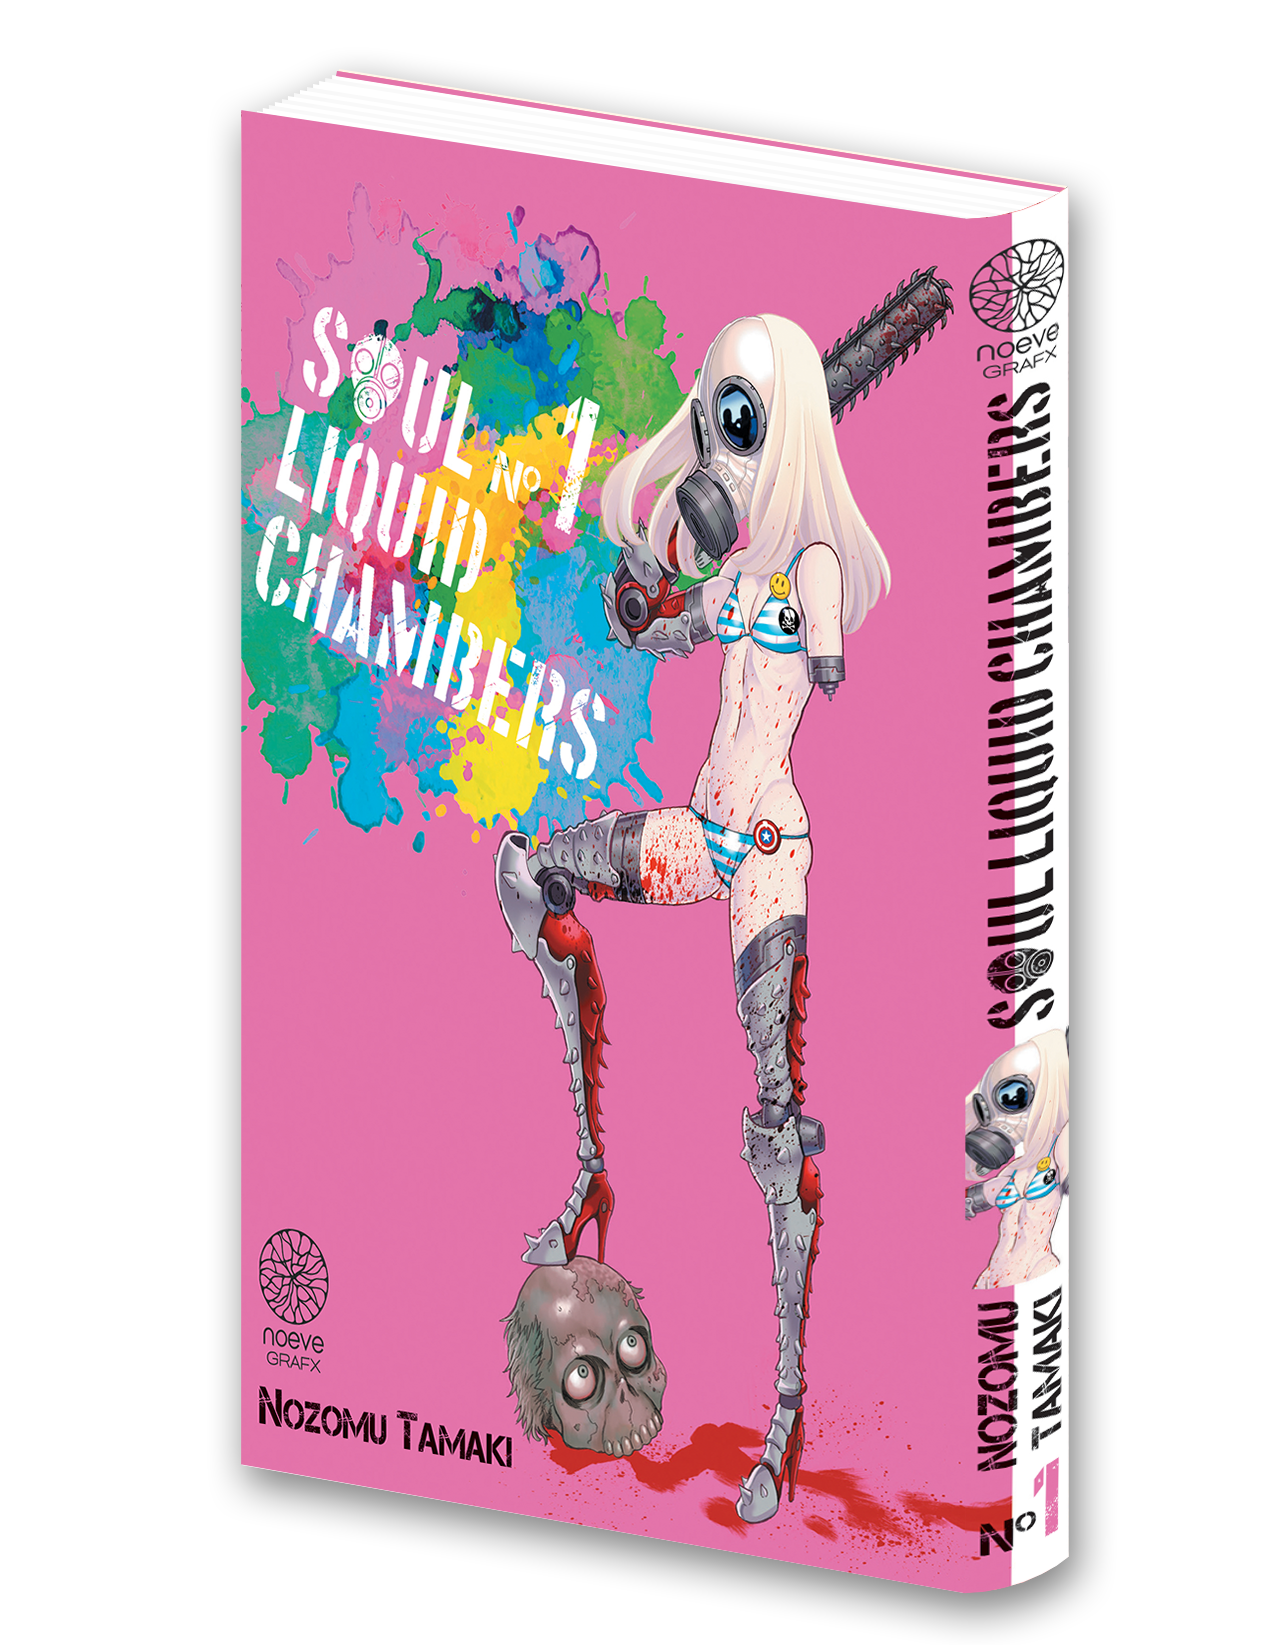 Visuel 3D du manga Soul Liquid Chambers